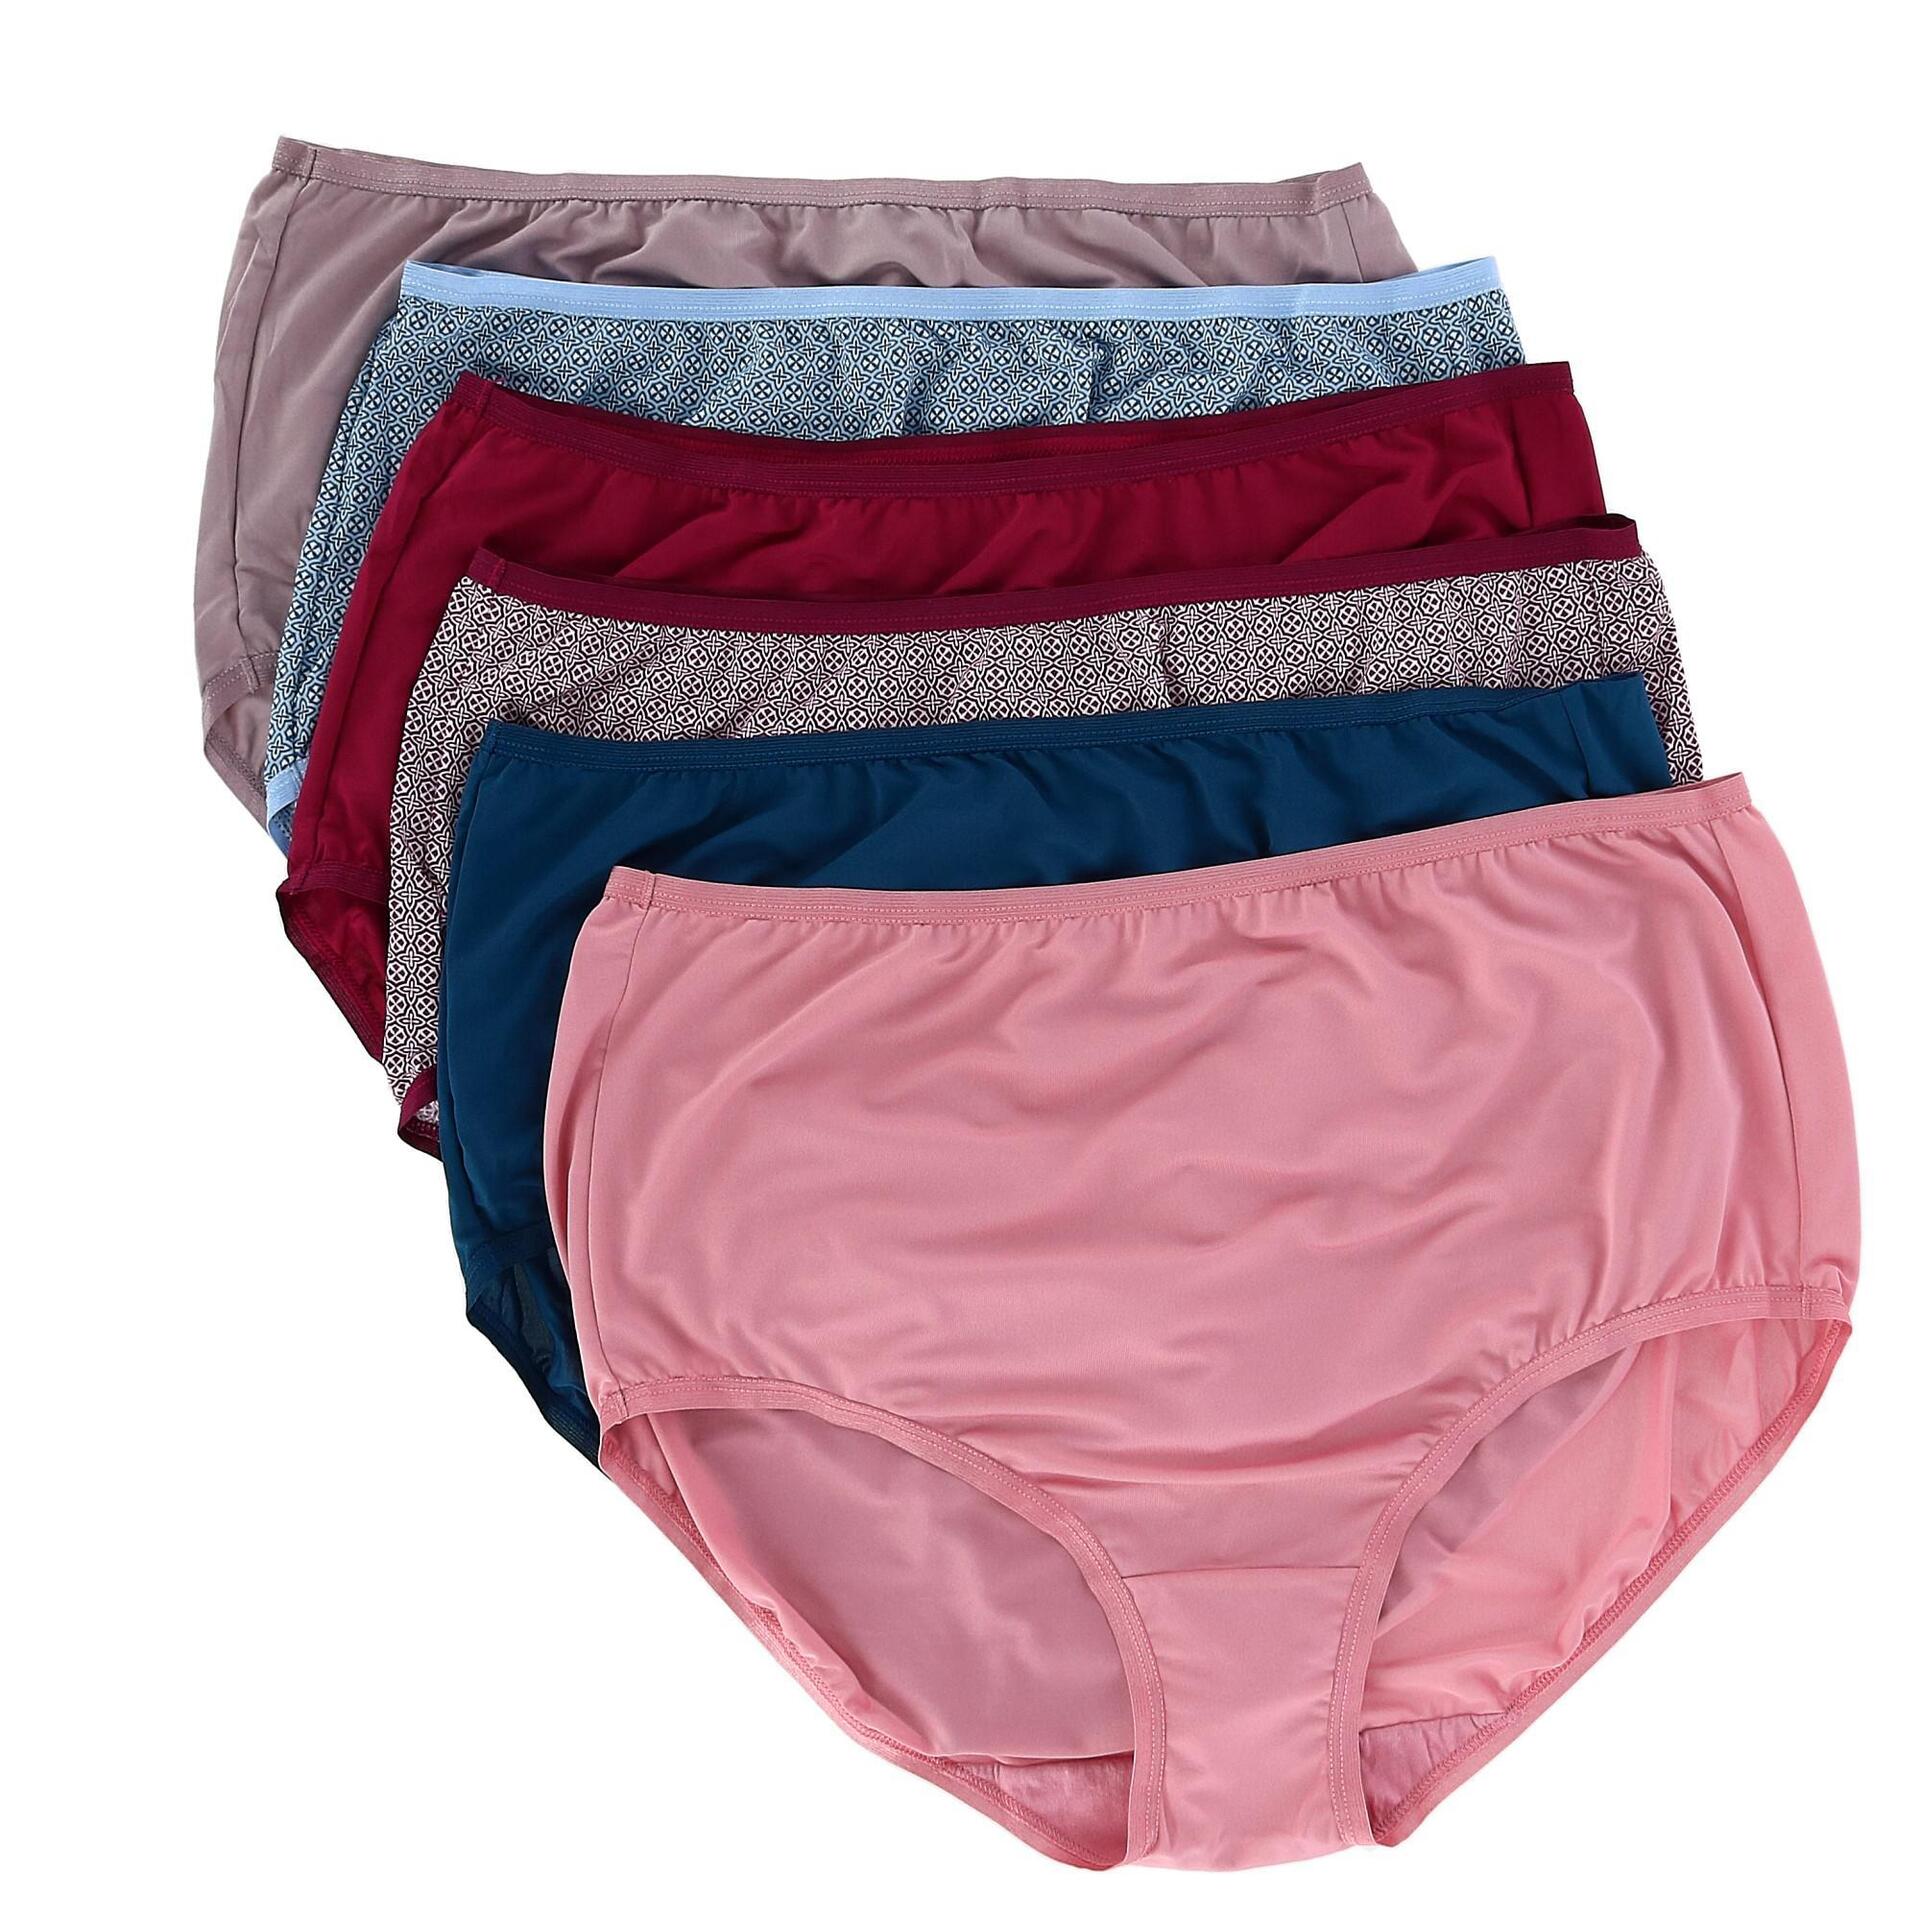 Fruit of the Loom Women's Microfiber Brief Underwear (6 Pack) - Multi